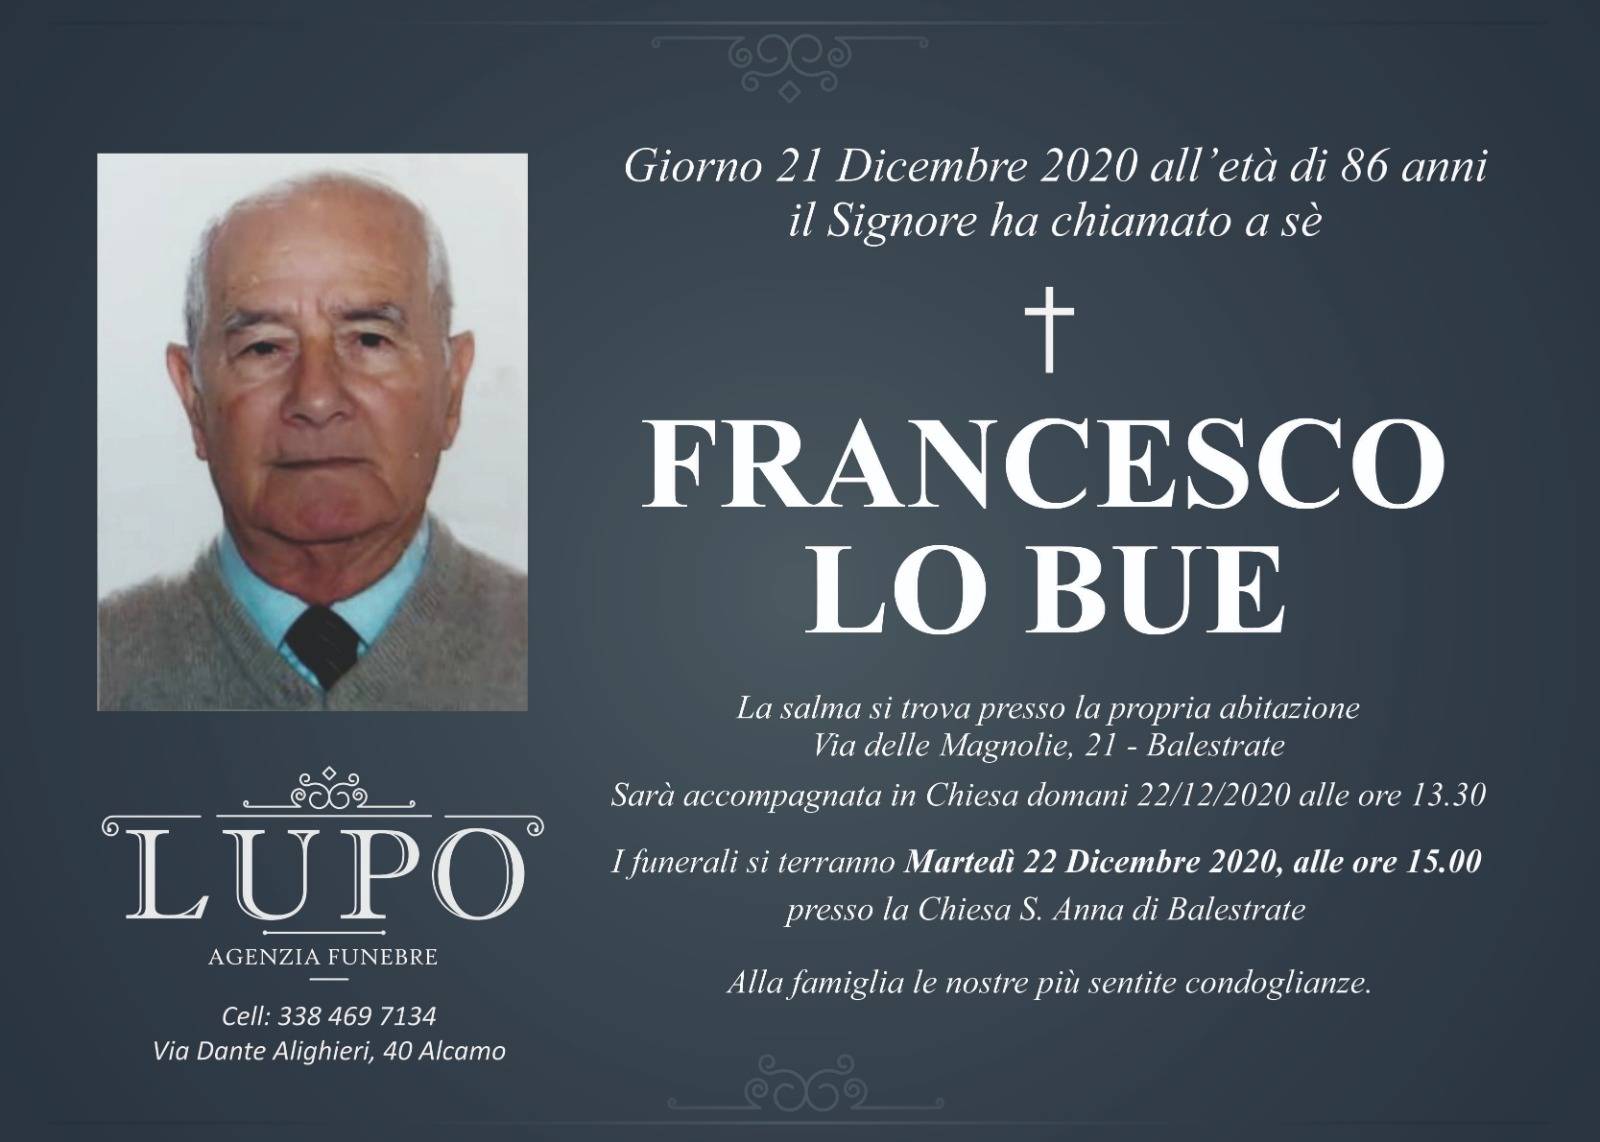 Francesco Lo Bue